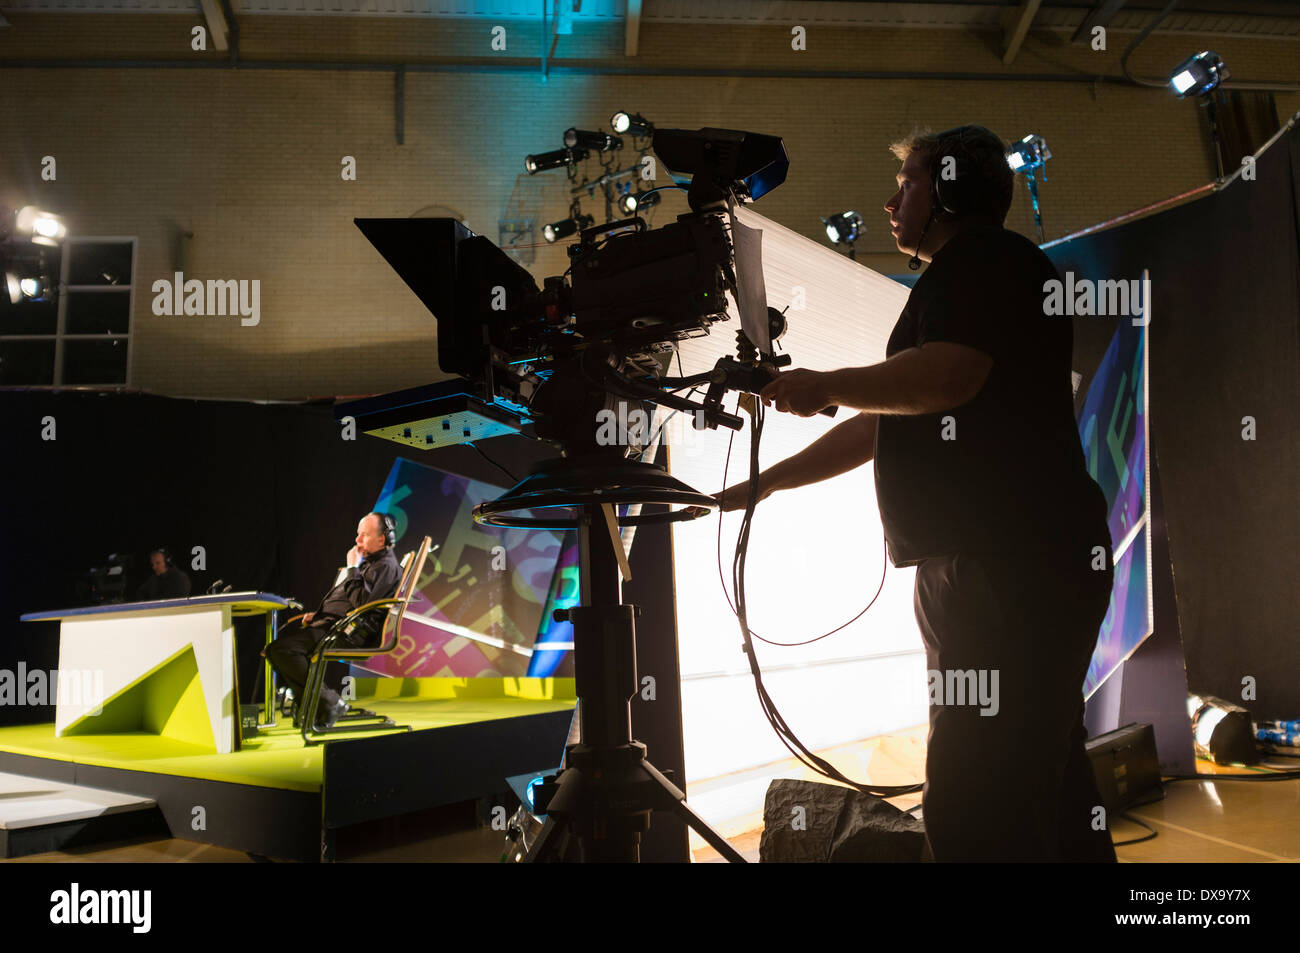 Eine professionelle TV-Kameramann arbeitet in einem Fernsehstudio Betrieb eine Videokamera für BBC/S4C Wales UK broadcast Stockfoto